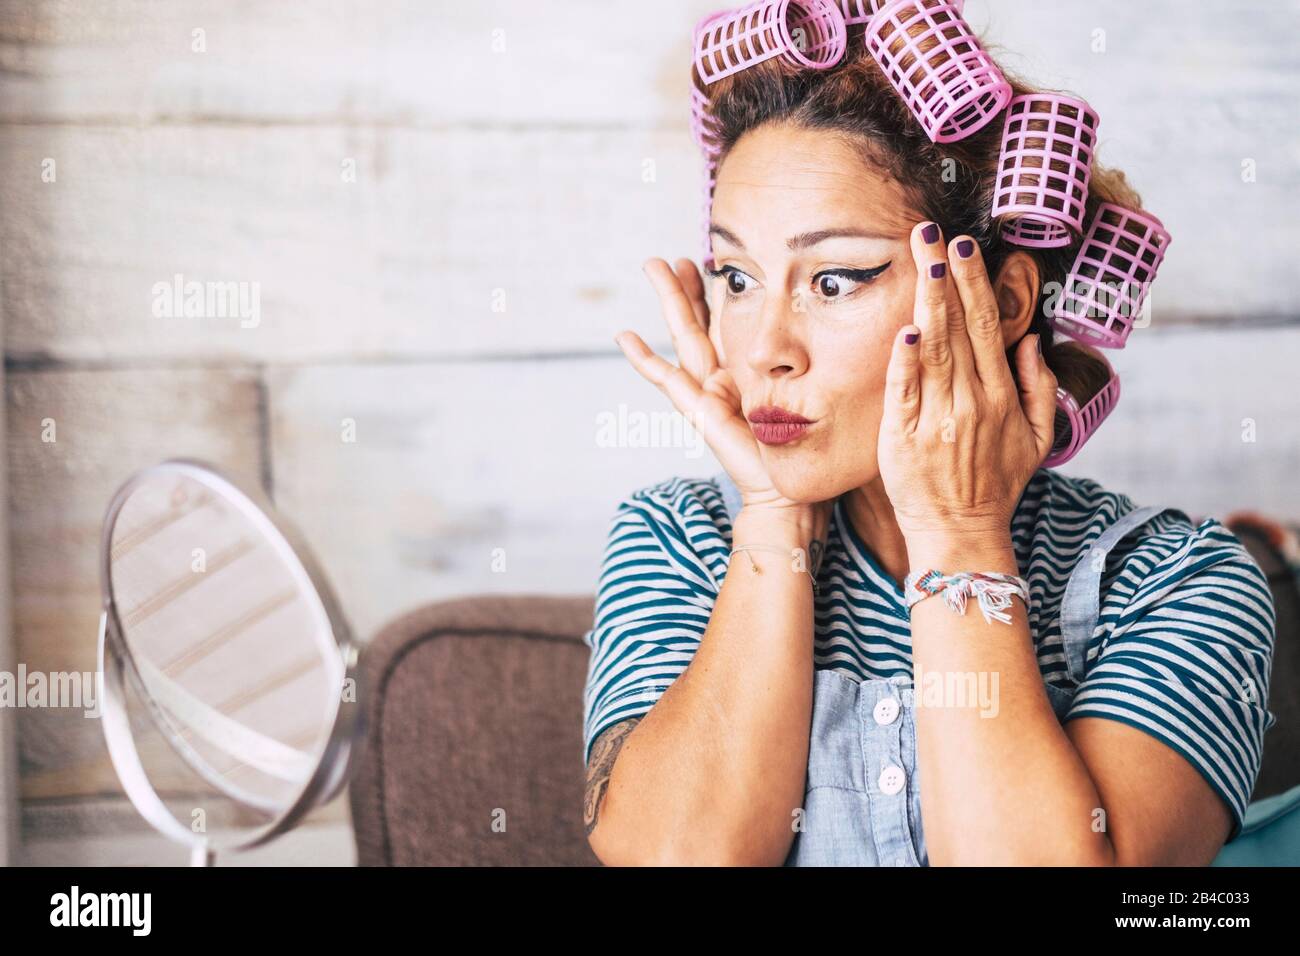 Schöne und lustige Ausdrucksweise kaukasische Erwachsene Frau, die sich zuhause vor dem Spiegel mit Schminke auf dem Gesicht - Falten prüfen und älteres Konzept für junge Leute bekommen - Lockenstab auf dem Haar Stockfoto